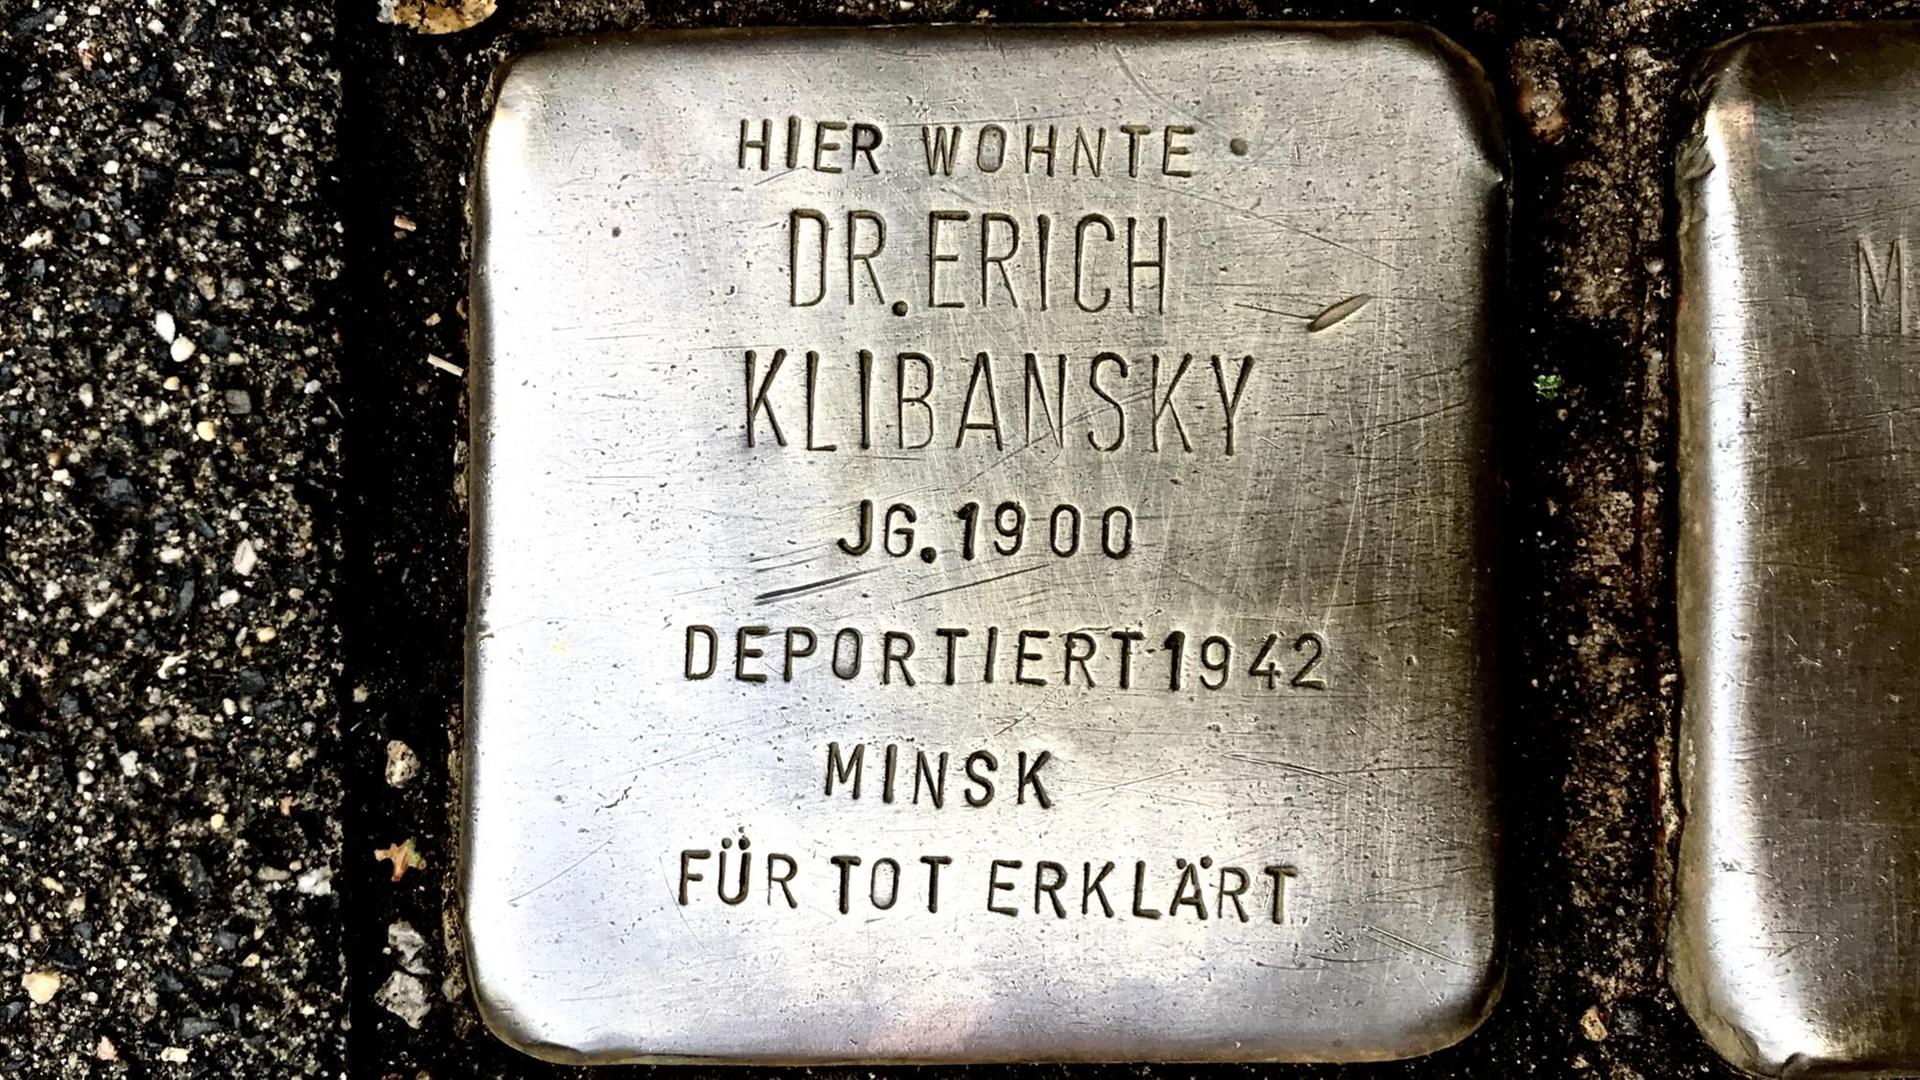 In der Volksgartenstraße 10 in Köln befindet sich der "Stolperstein" für das Gedenken an Erich Klibansky.